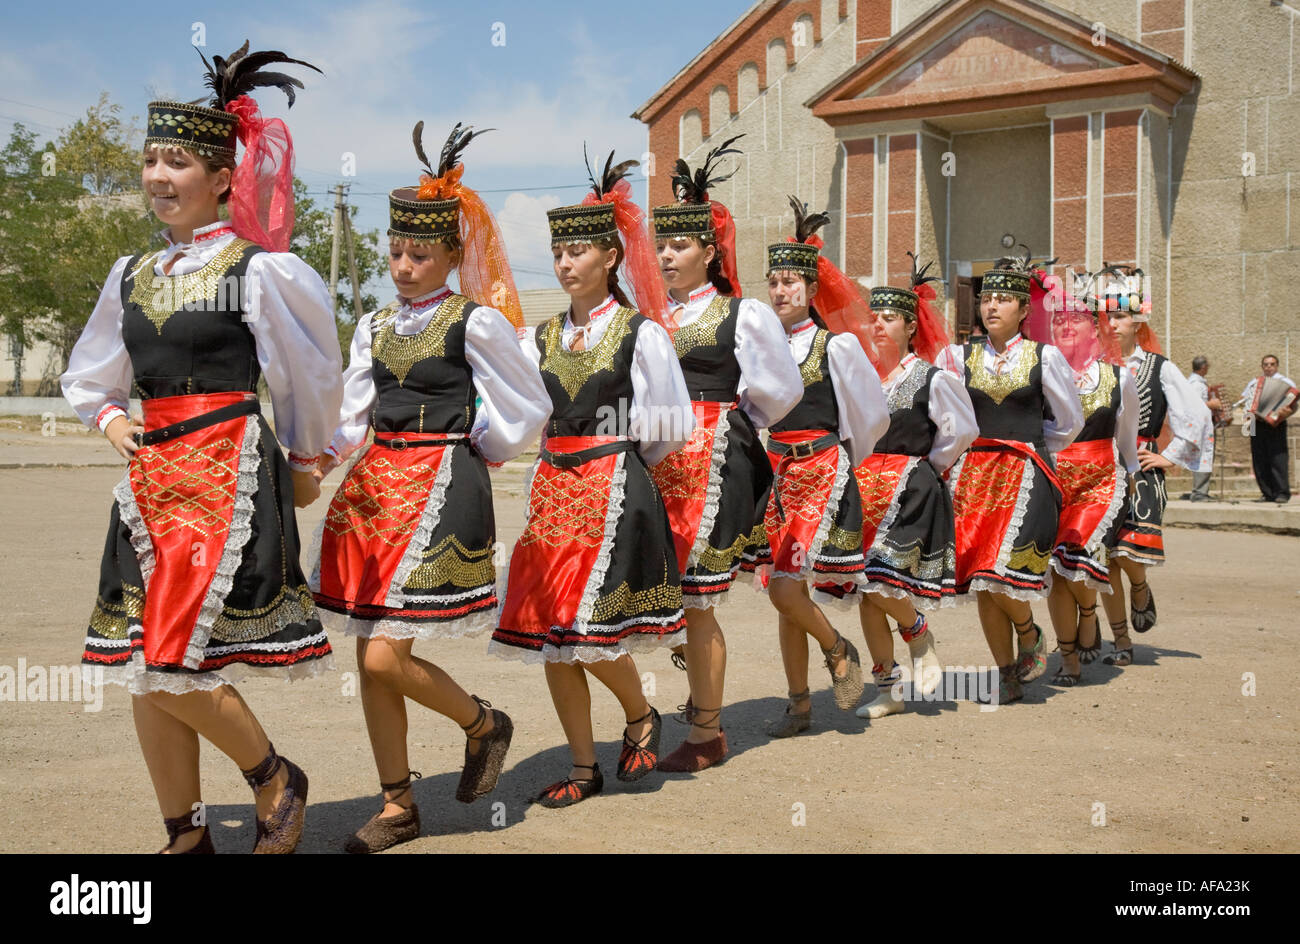 Le giovani ragazze nei tradizionali costumi ucraino dancing di fronte alla casa di città in Plotzk / Ucraina Foto Stock